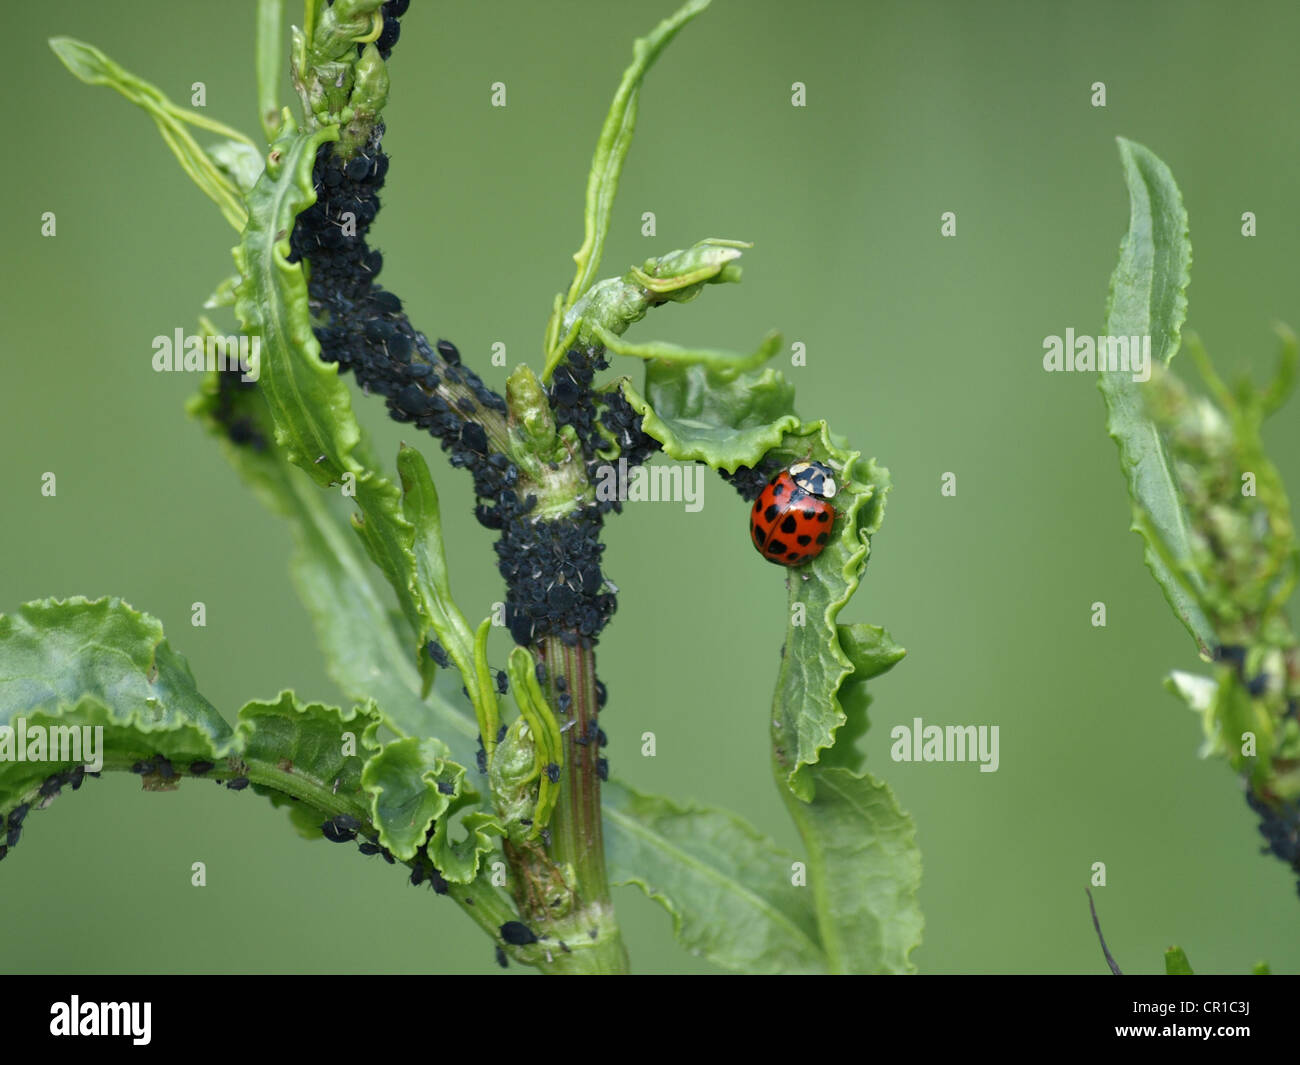 ladybird with blackflies, black bean aphids on a plant / Marienkäfer mit schwarzen Bohnenläusen an einer Pflanze Stock Photo